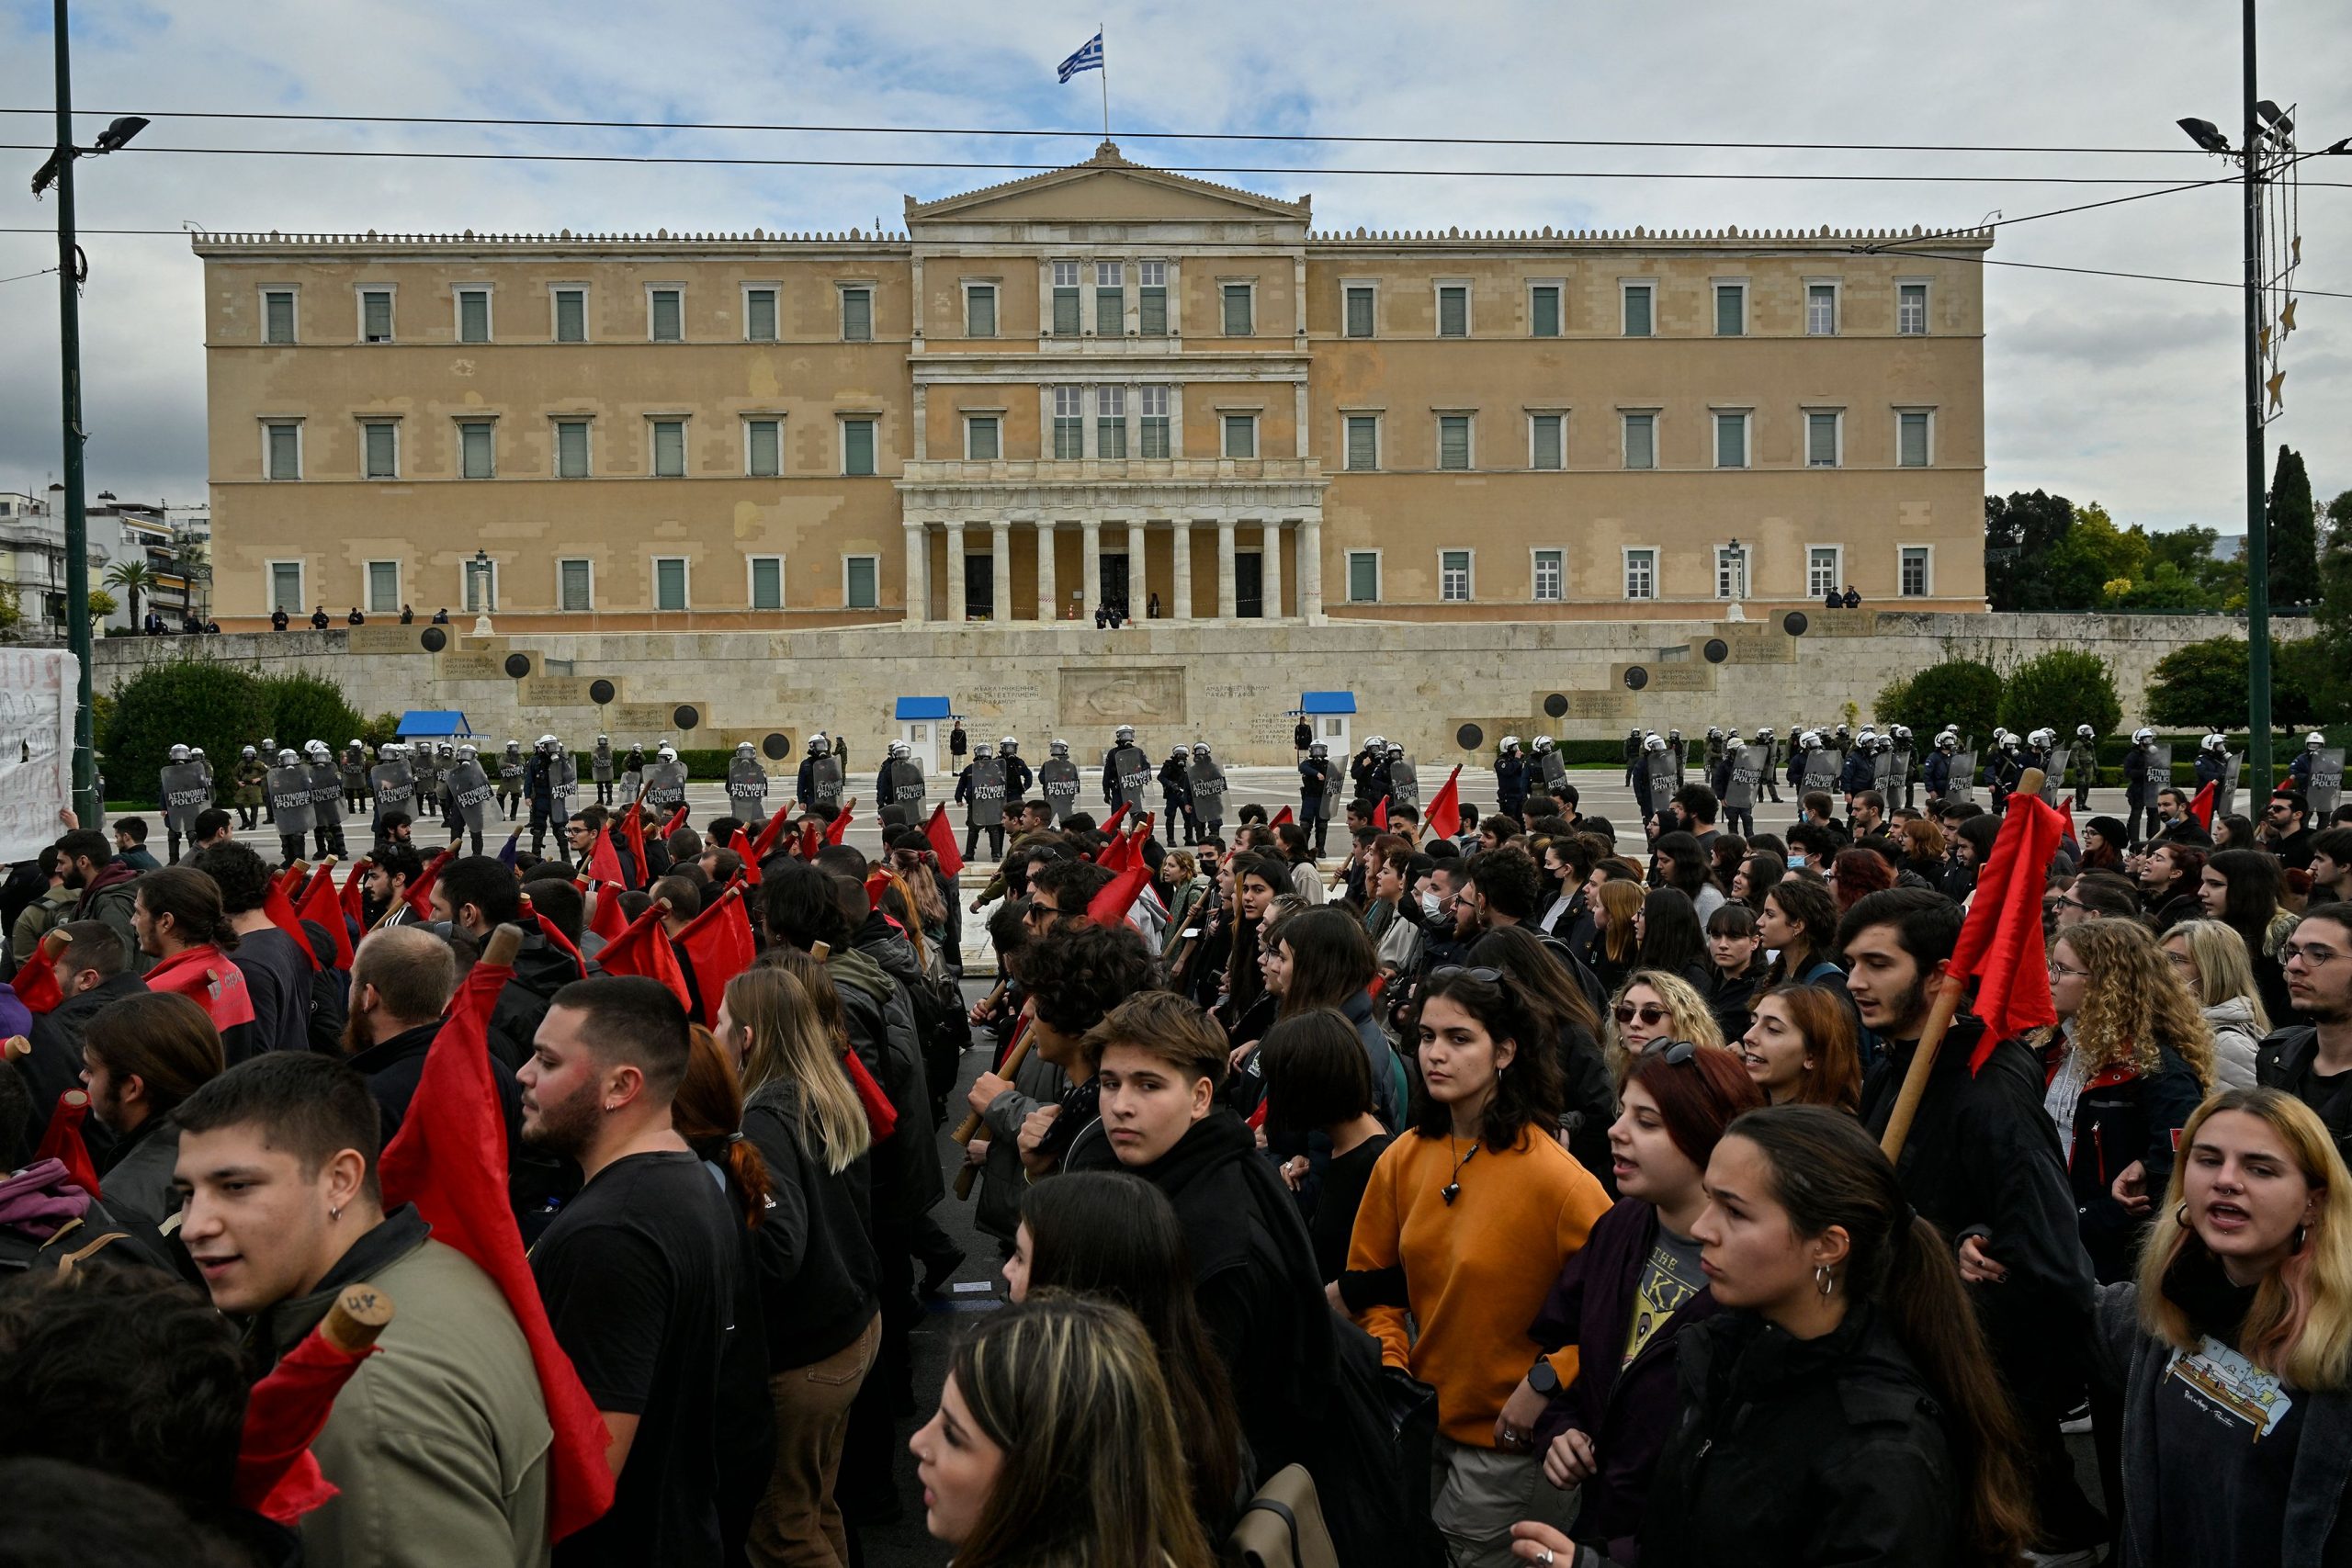 希腊16岁少年遭枪击头部 警察暴力事件再犯众怒